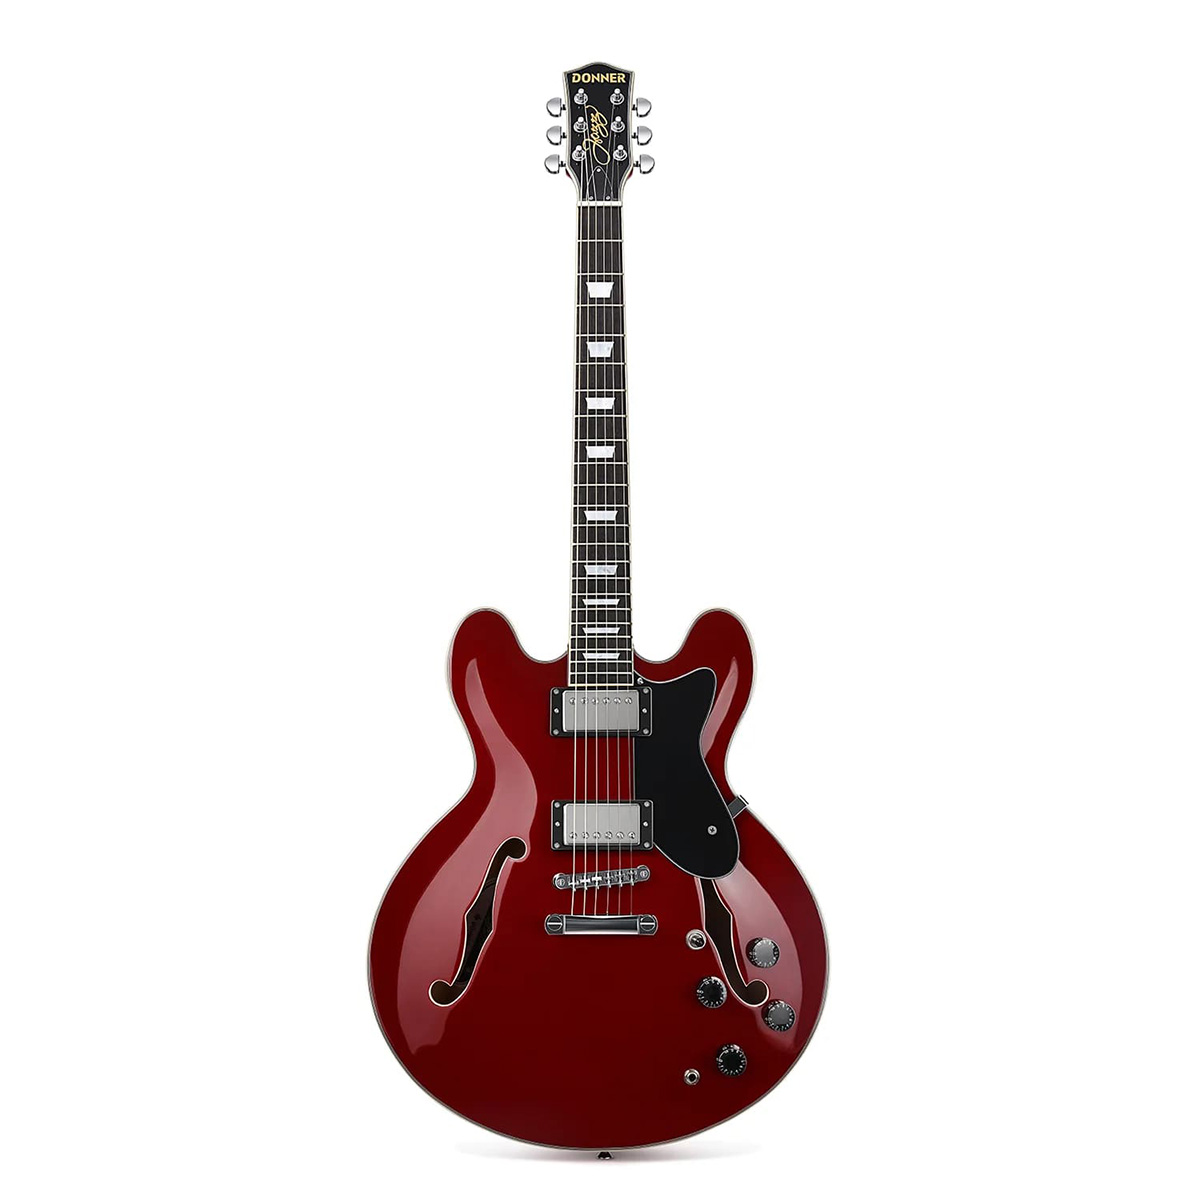 Donner DJP-1000 Burgundy Red (バーガンディレッド) エレキギター 